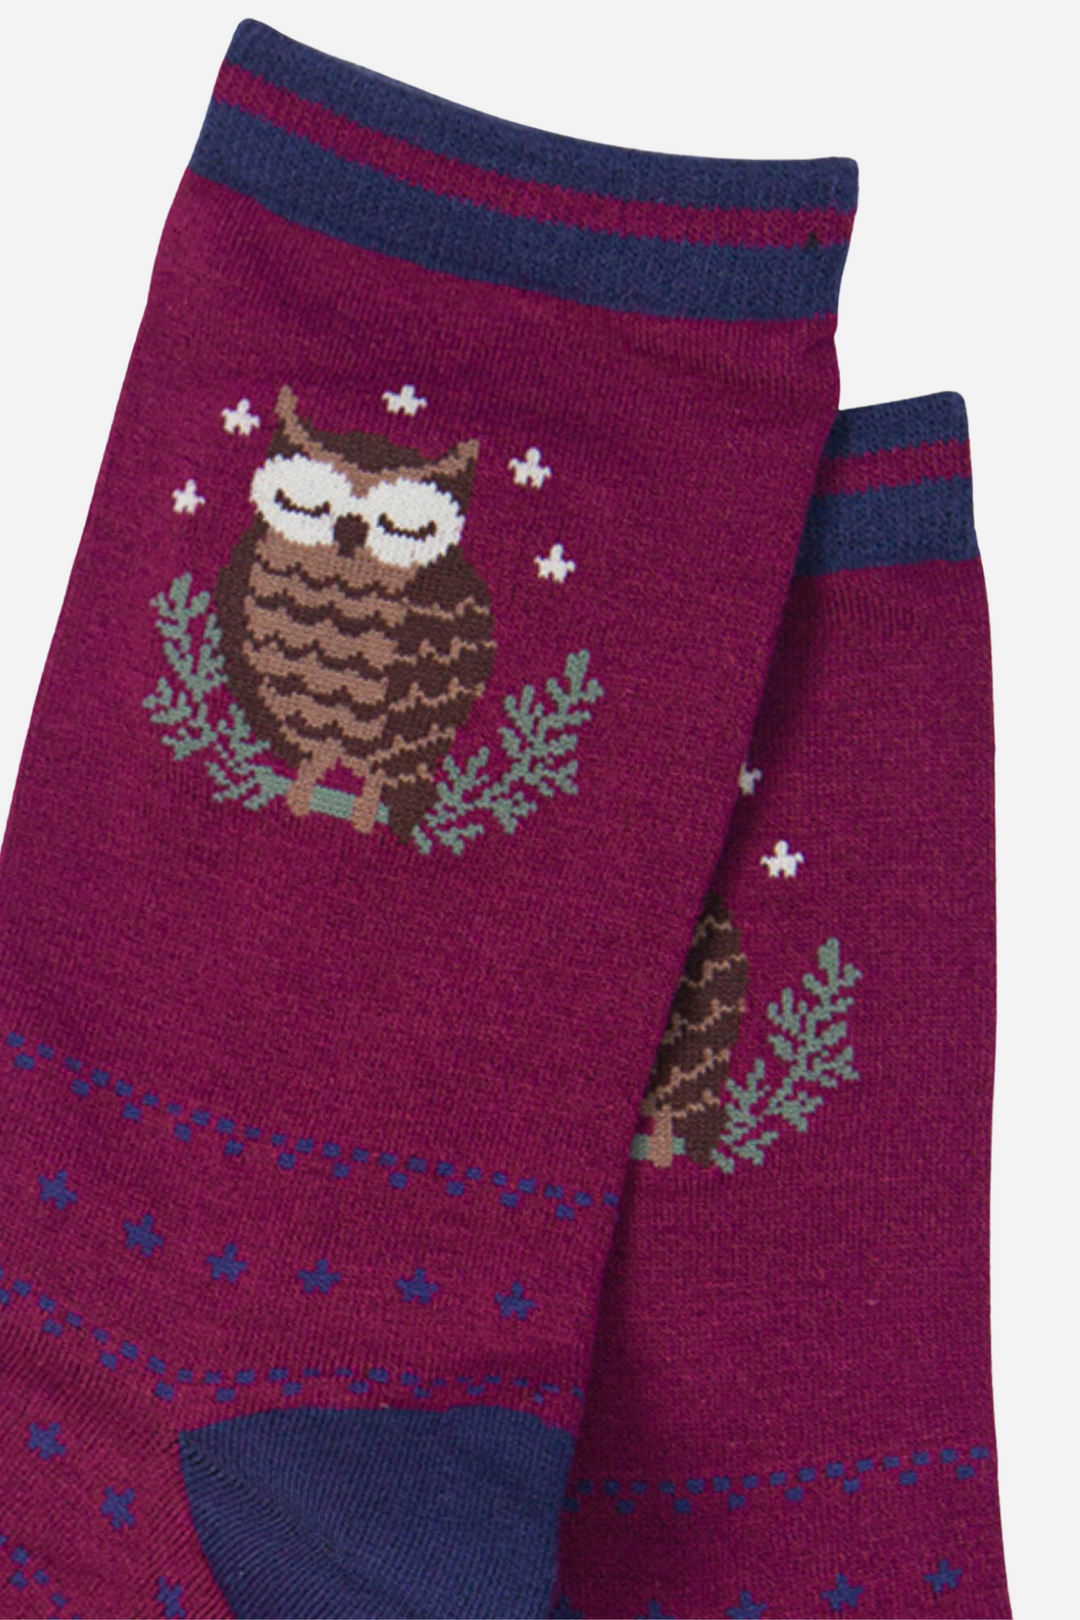 Women's Bamboo Owl Socks Novelty Bird Print Ankle Socks Burgundy